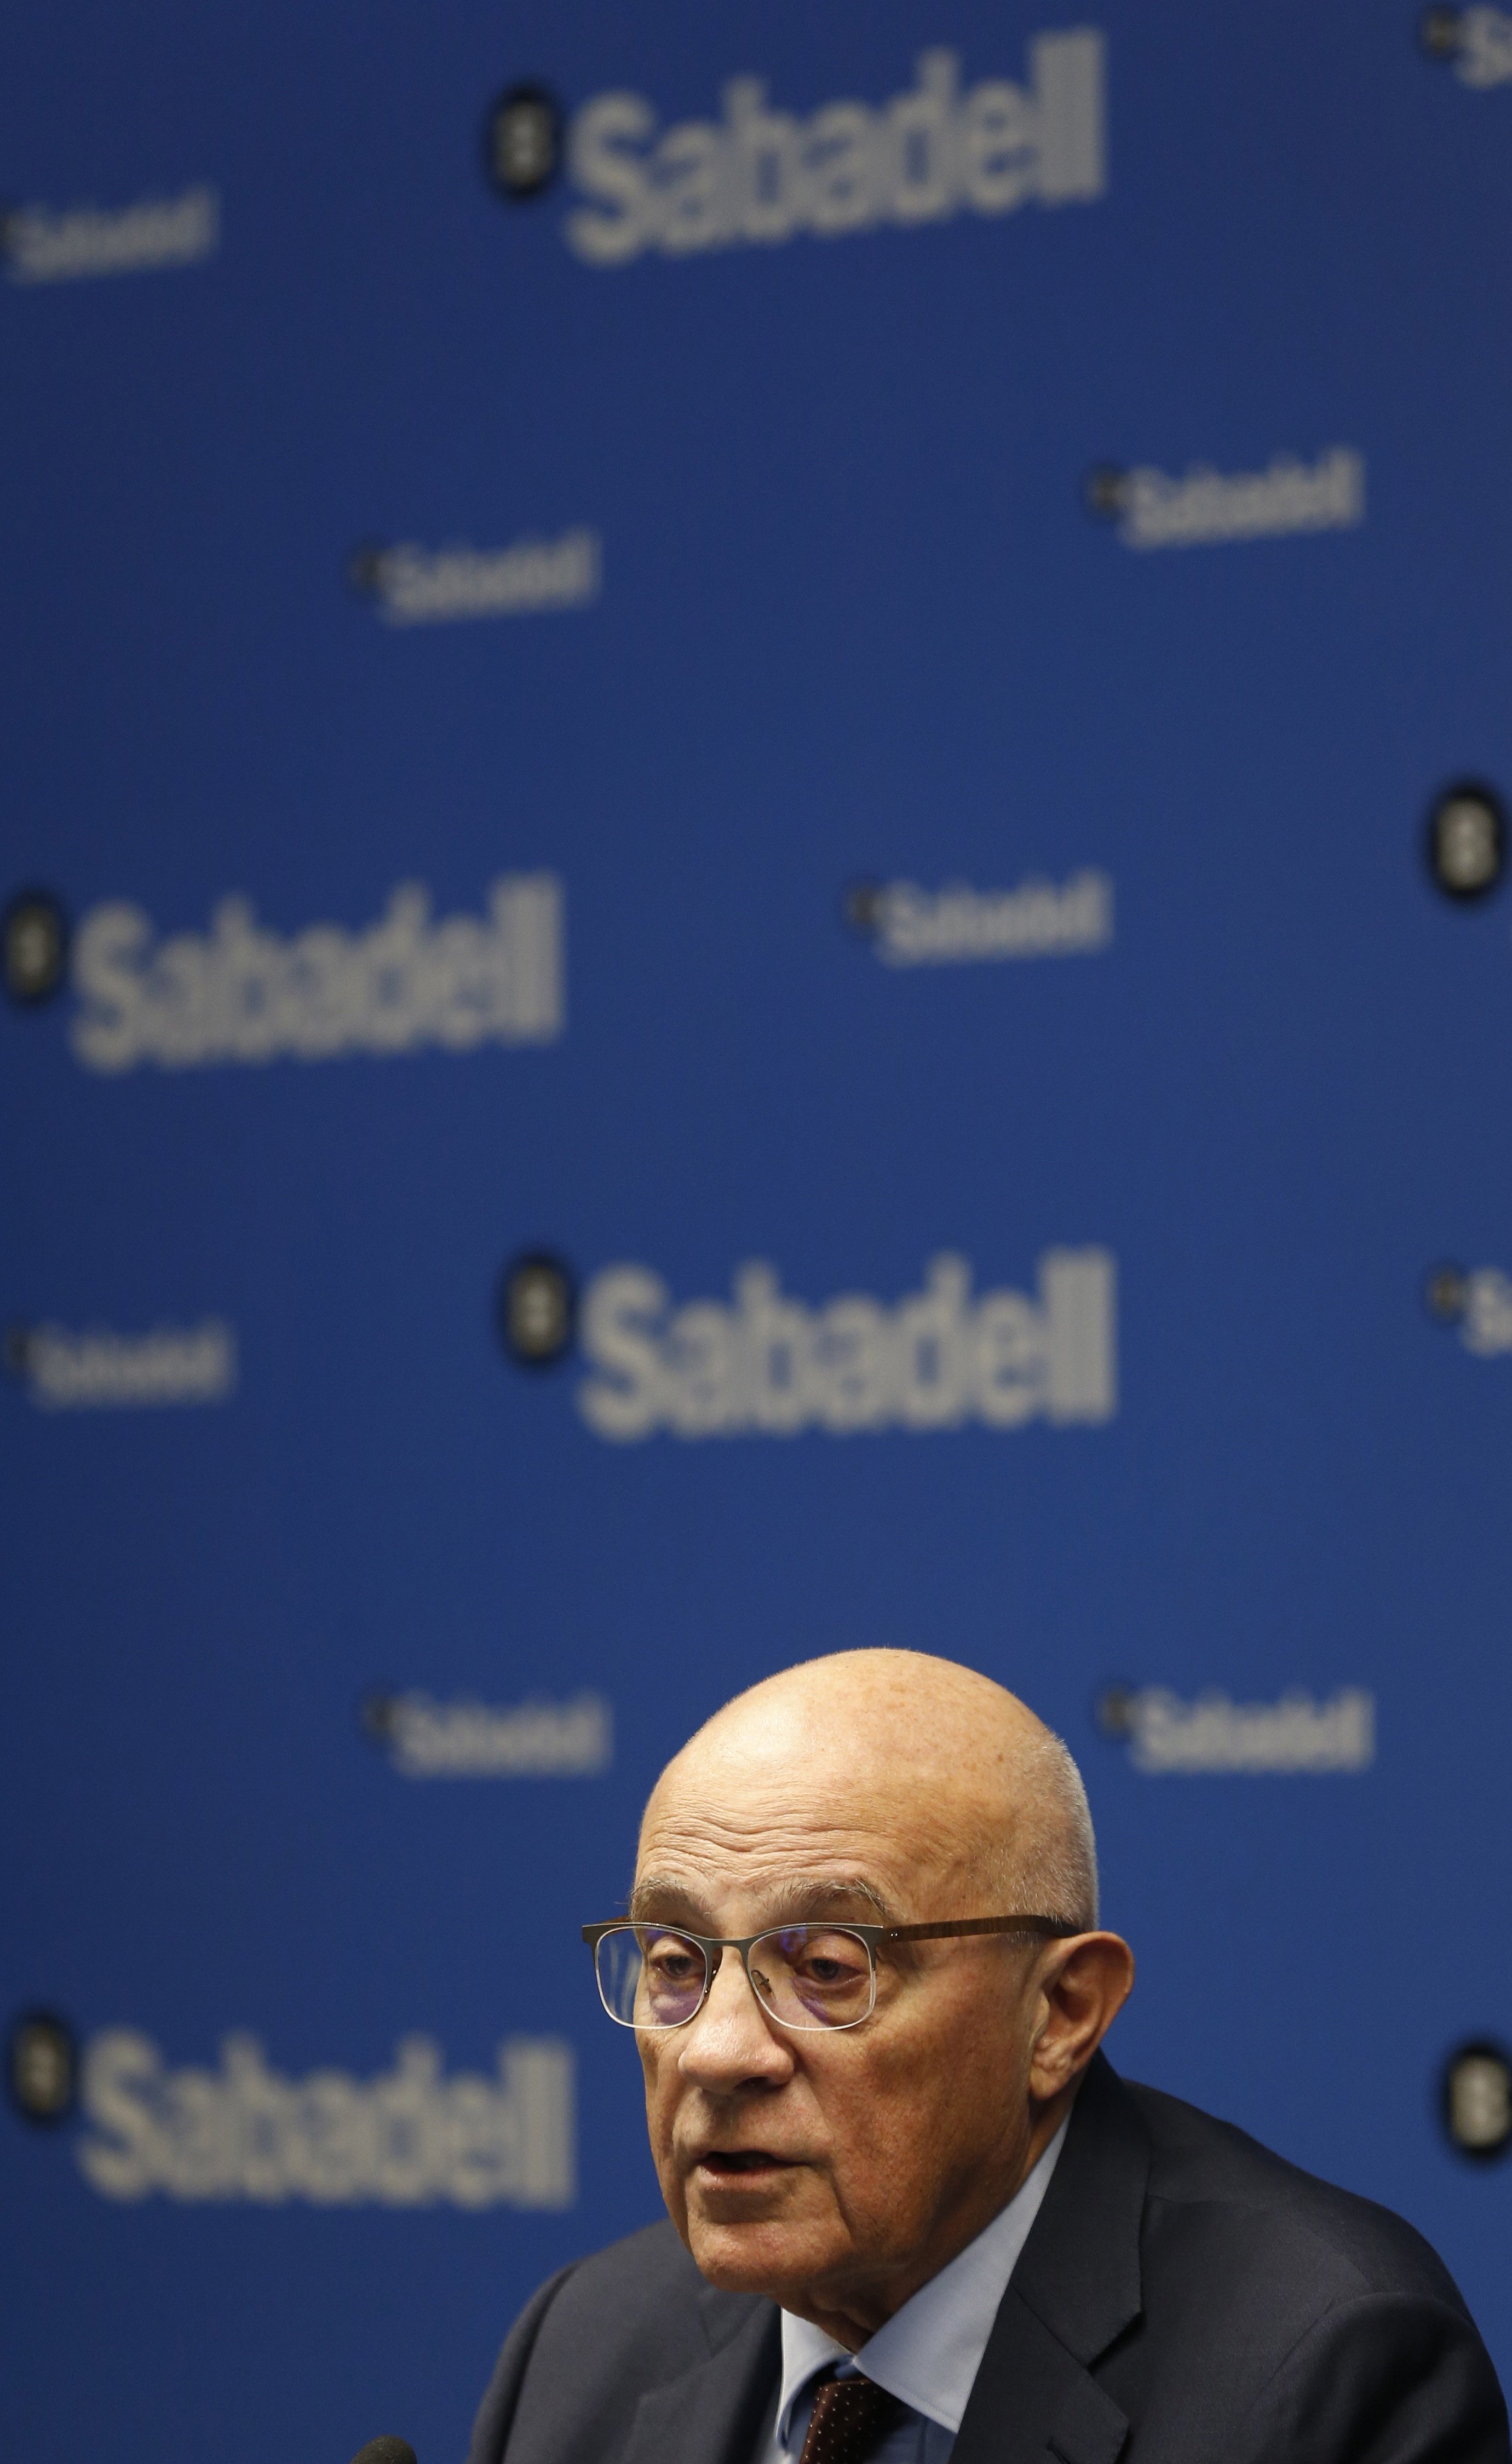 Oliu dejará sus funciones ejecutivas en el Banco Sabadell